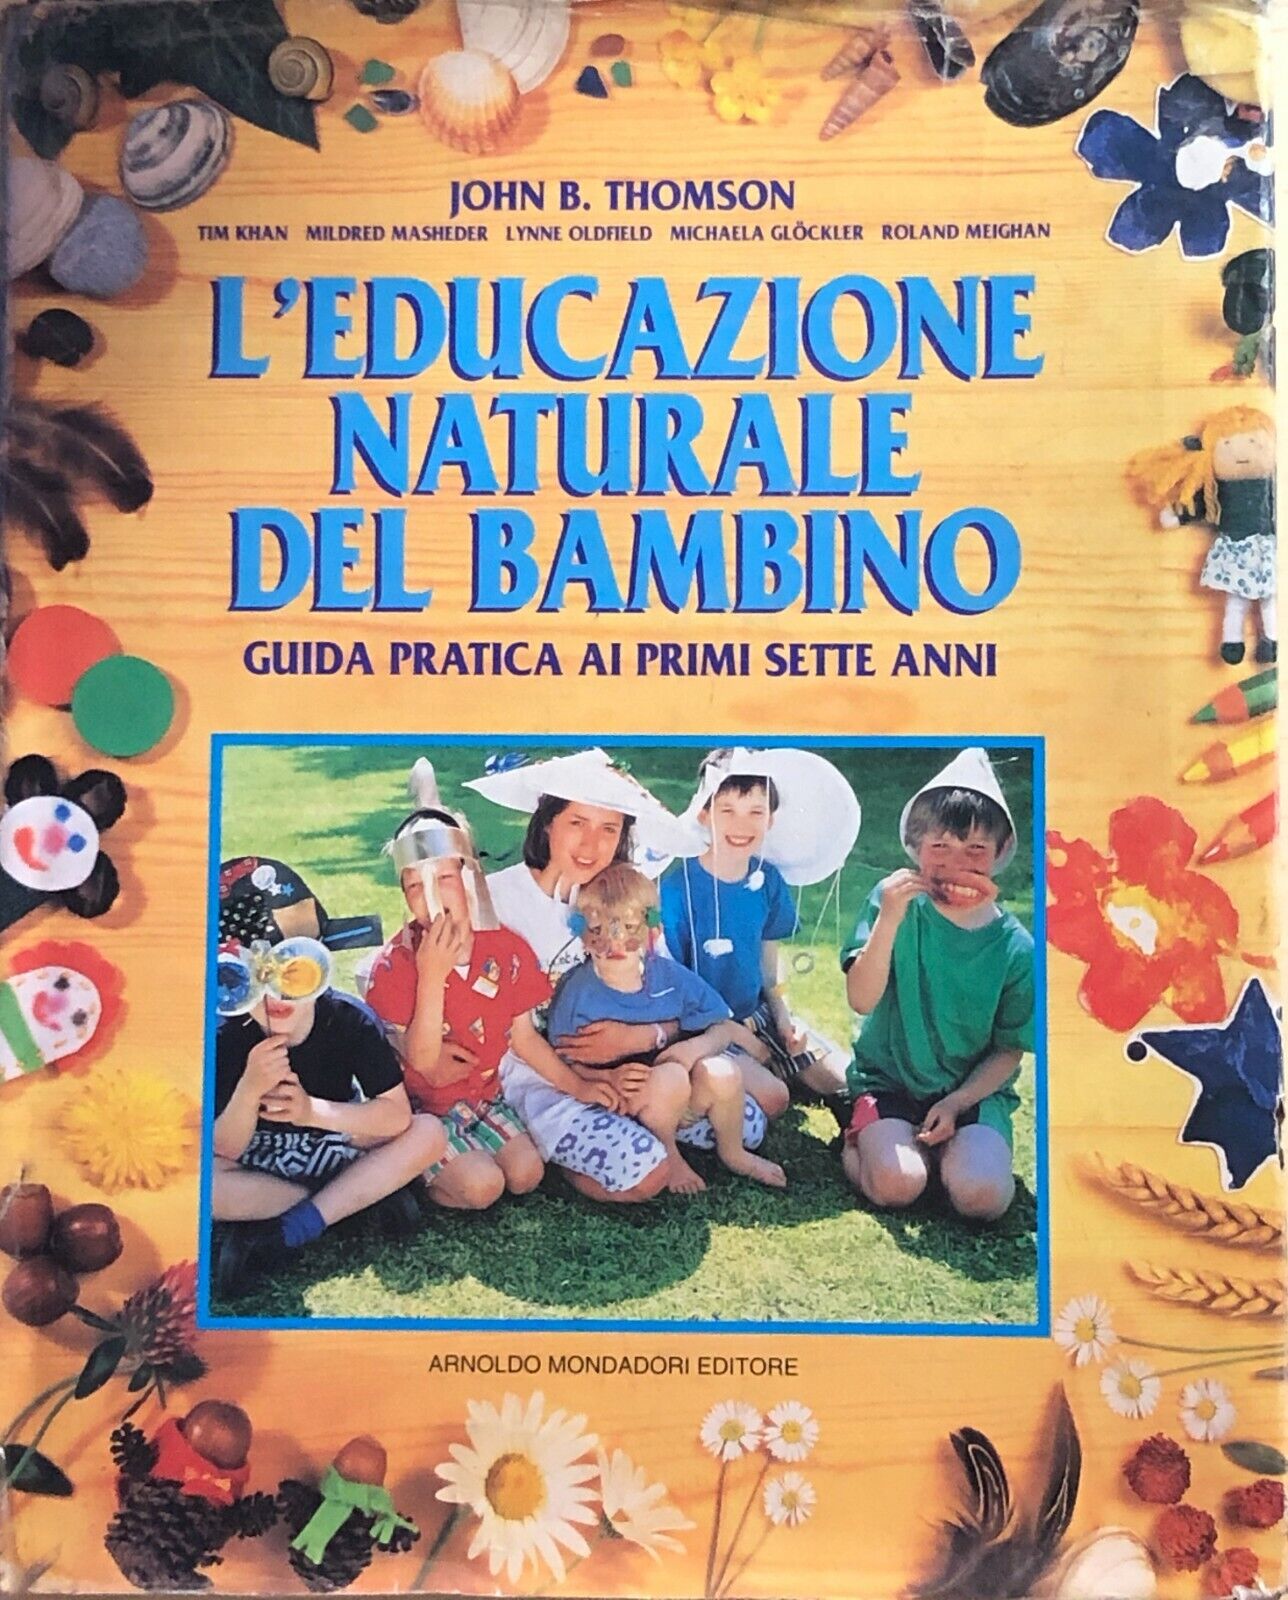 L'educazione naturale del bambino di AA.VV., 1996, Mondadori